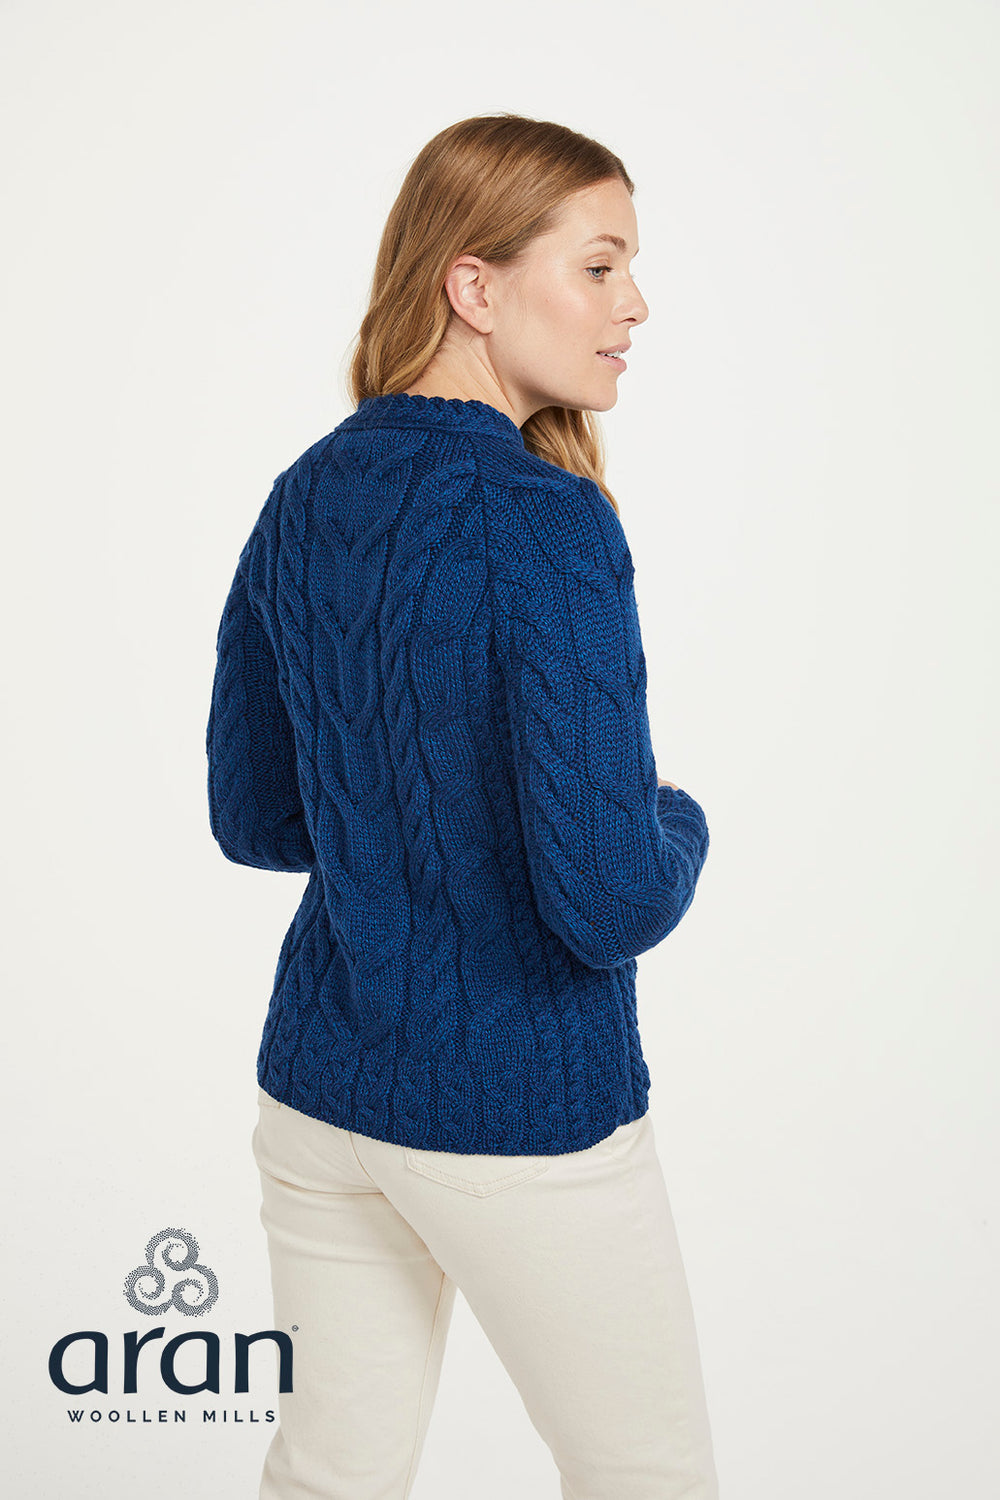 Aran Wool Super Soft Buttoned Sweater Deep Blue (B940 784)